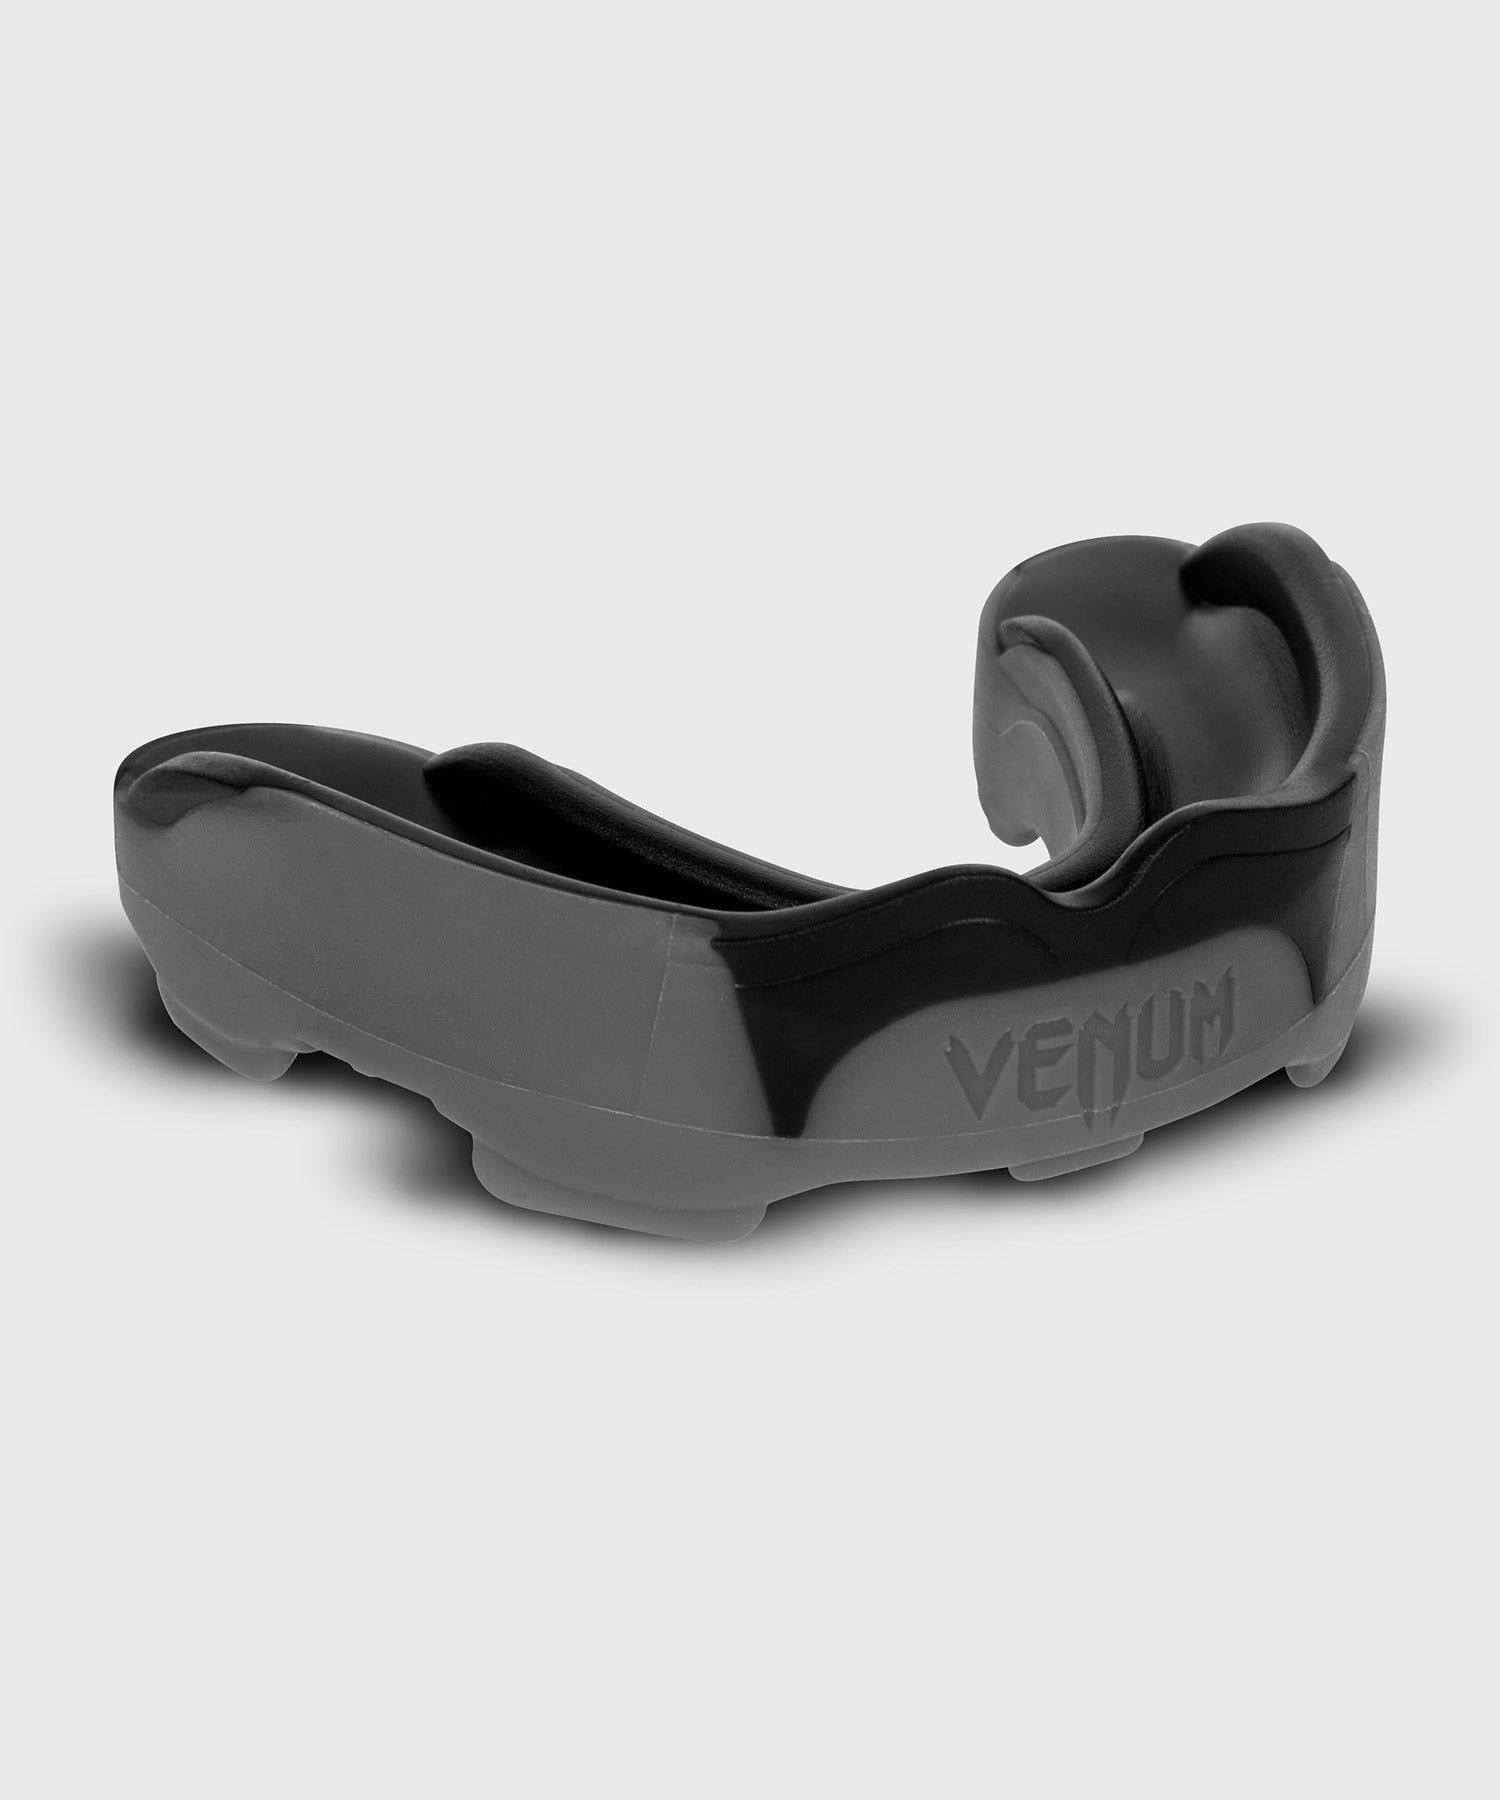 Protège dents Venum Predator-Unique-Noir / Violet-Noir / Violet